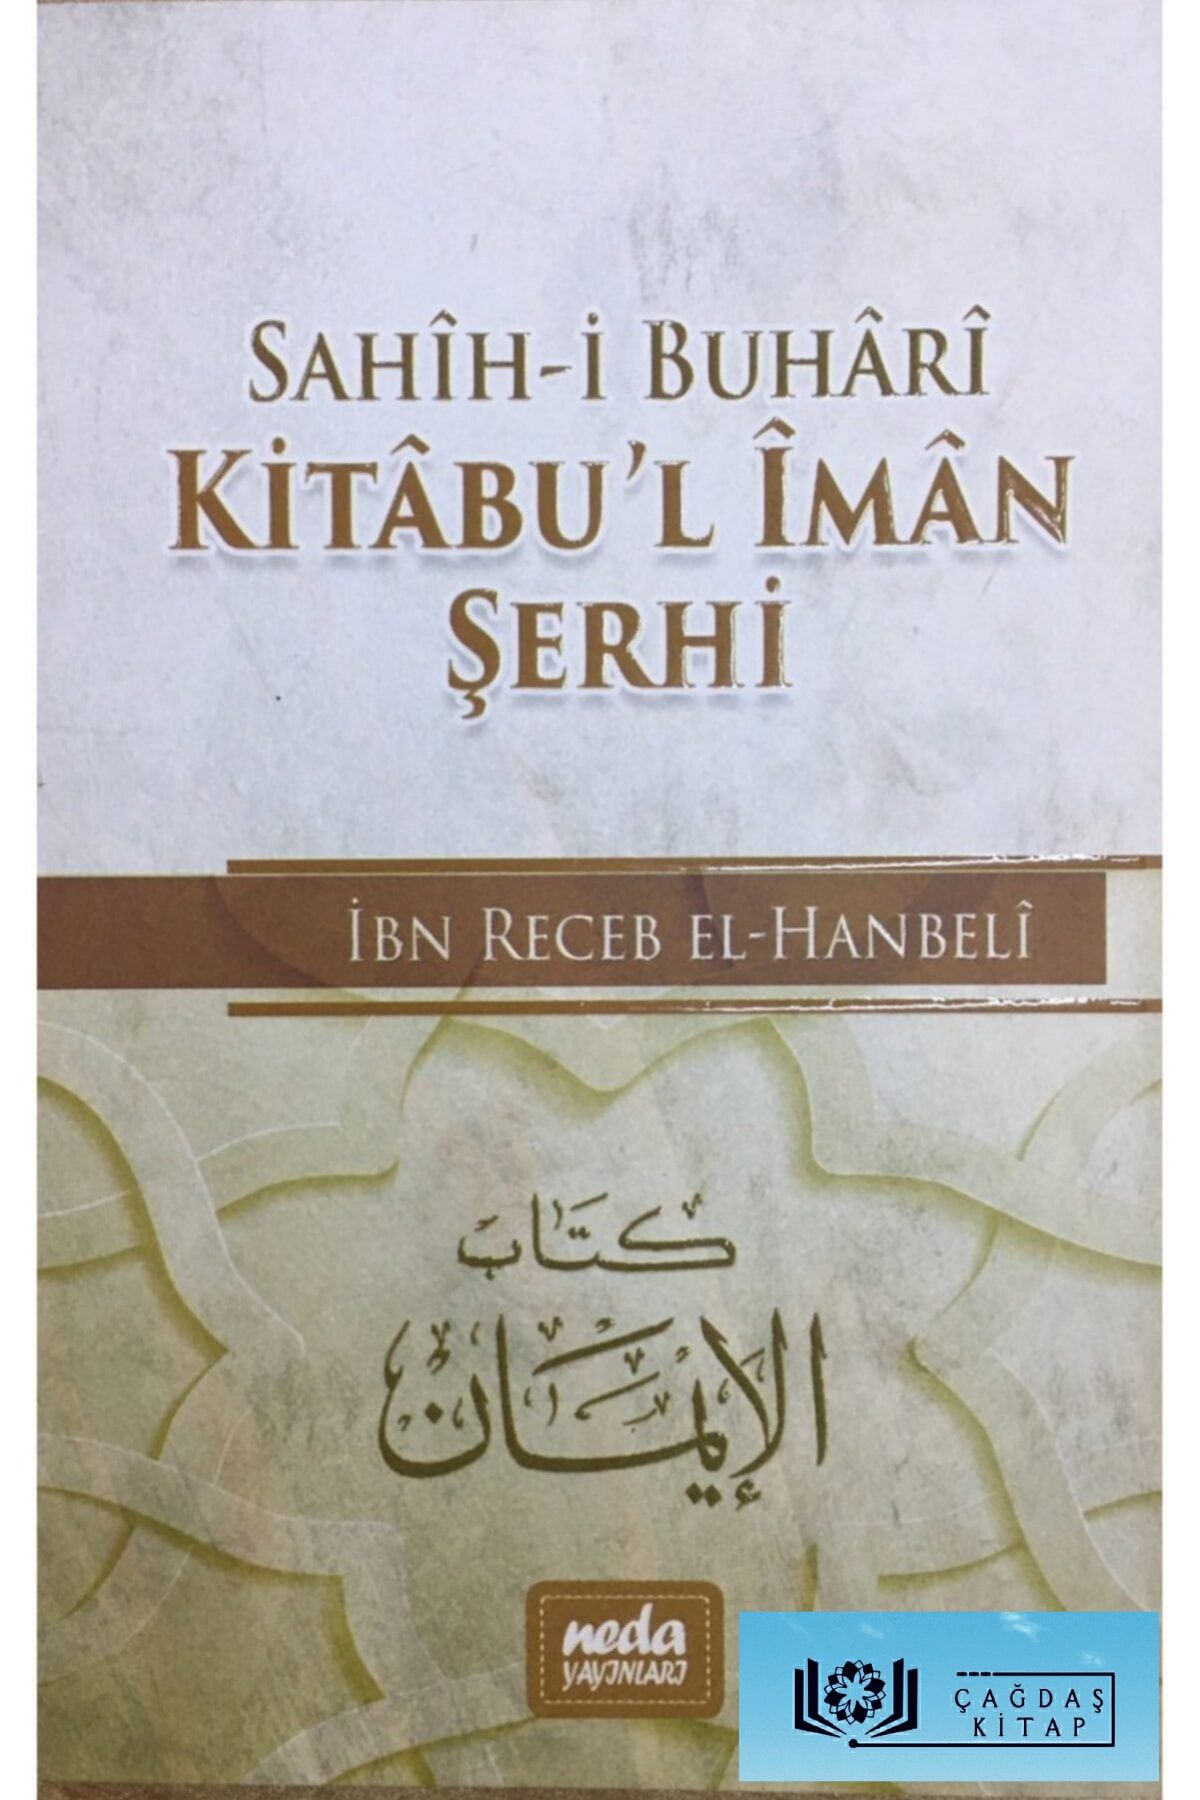 Neda Yayınları Sahih-i Buhari Kitabul Iman Şerhi, Ibn Receb El-hanbeli, 14x21 Cm. Neda